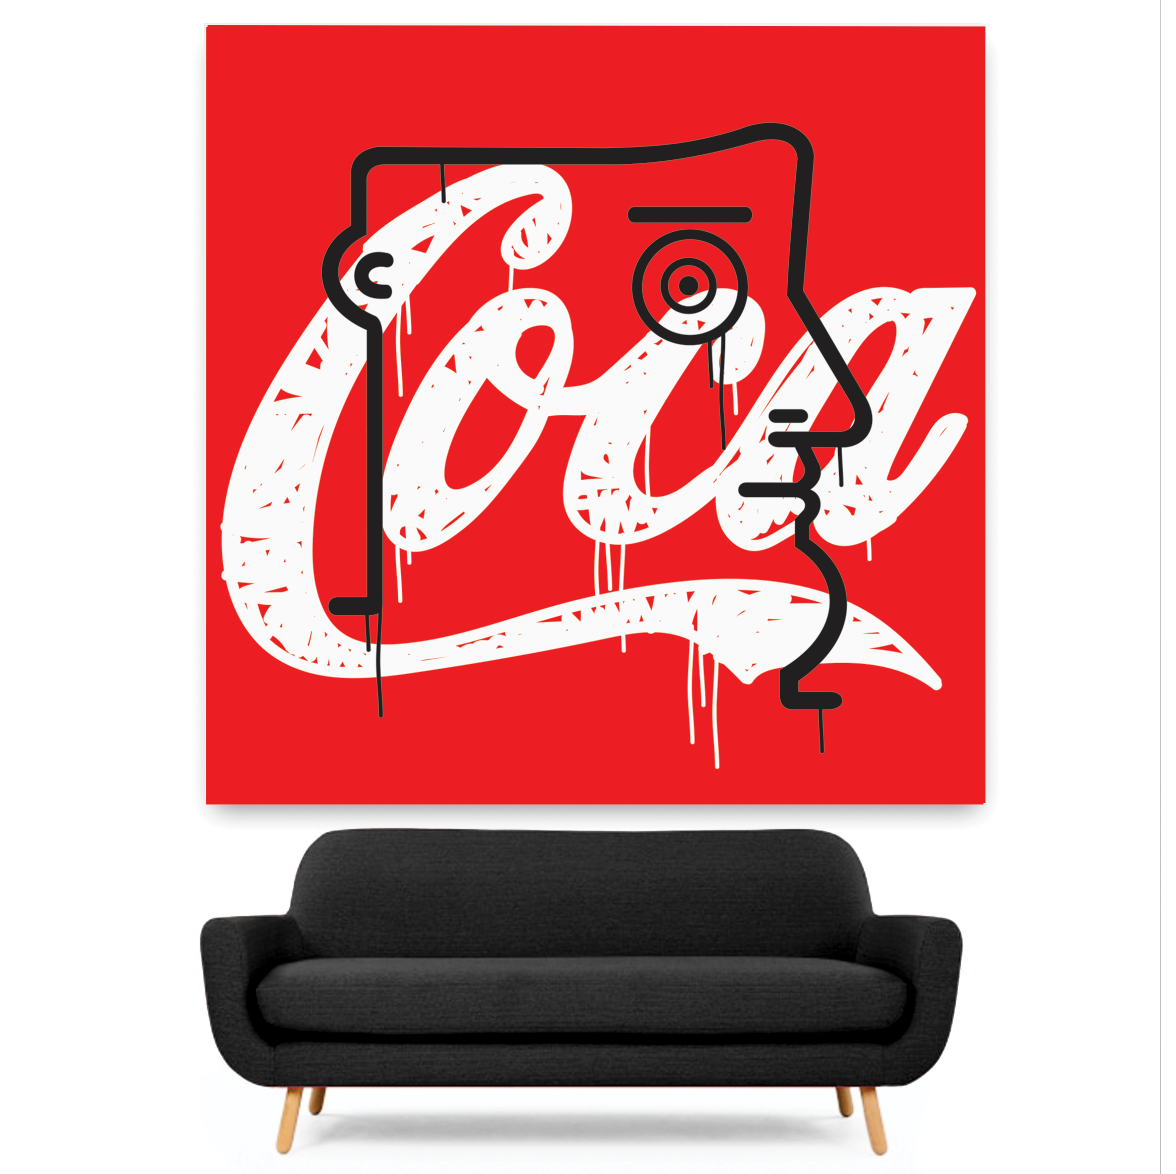 "Coca" (Tribute to M. Schifano)